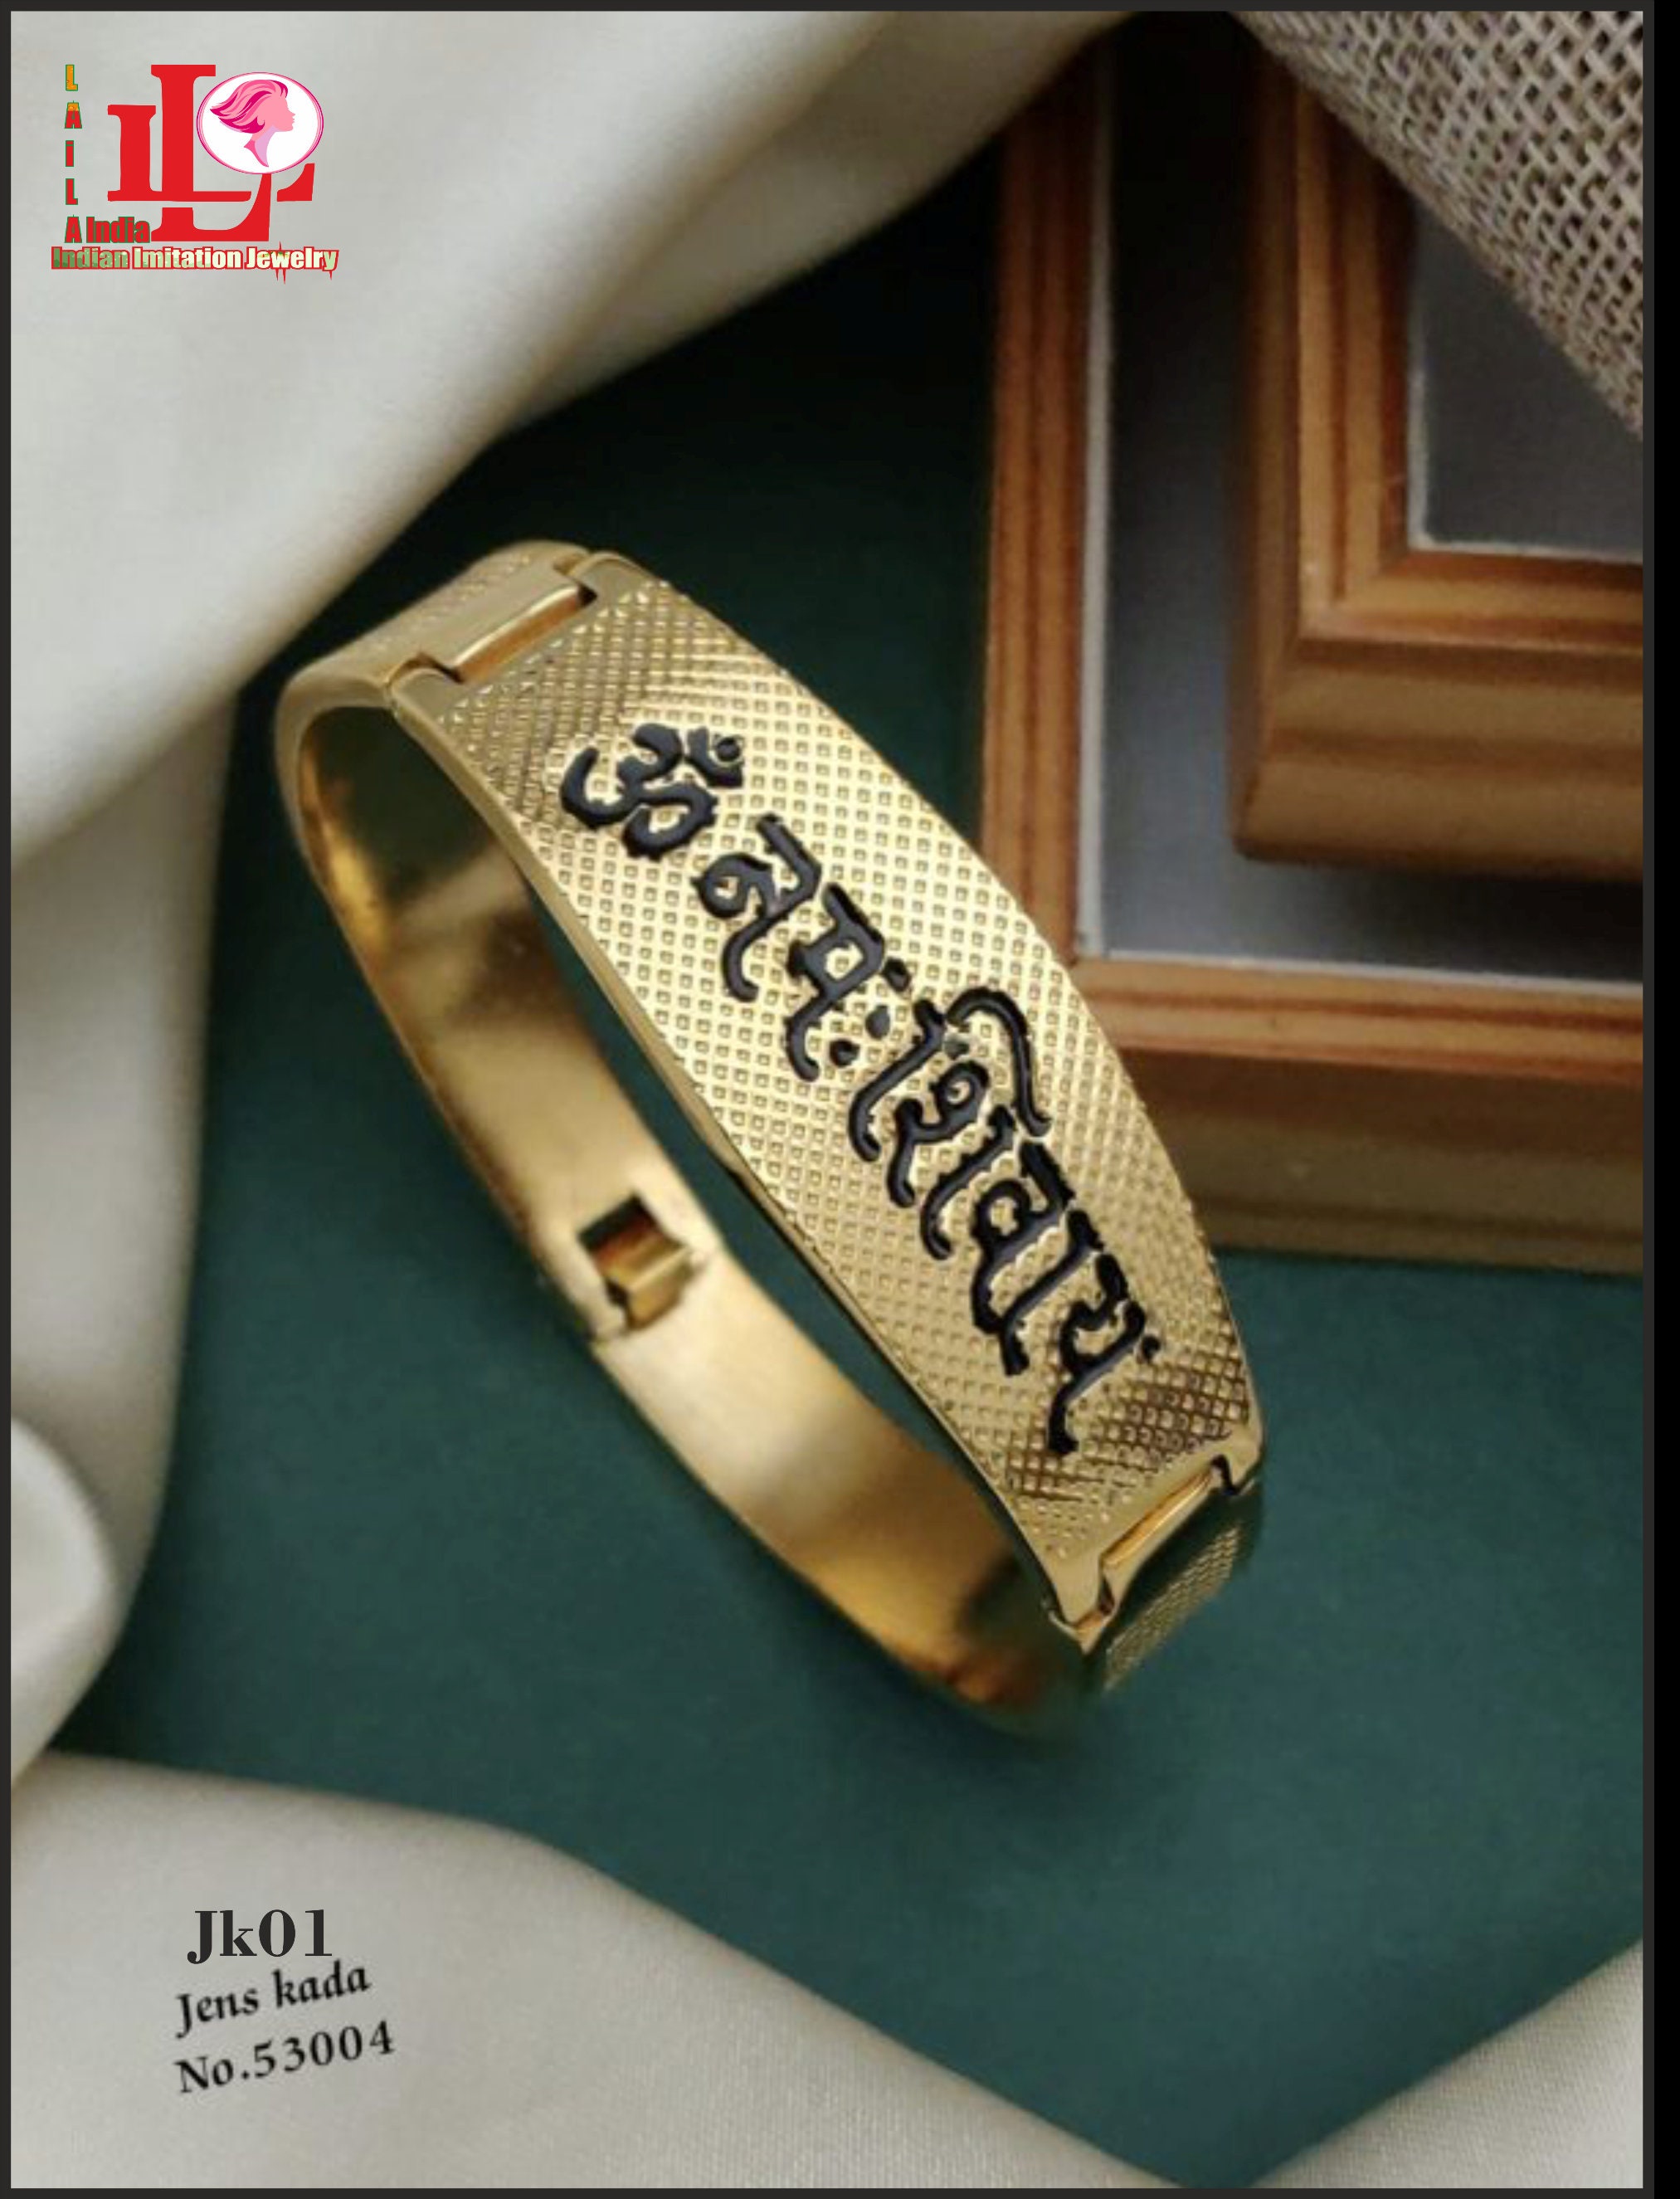 R D Jewellers - Silver Jen's bracelet | Facebook